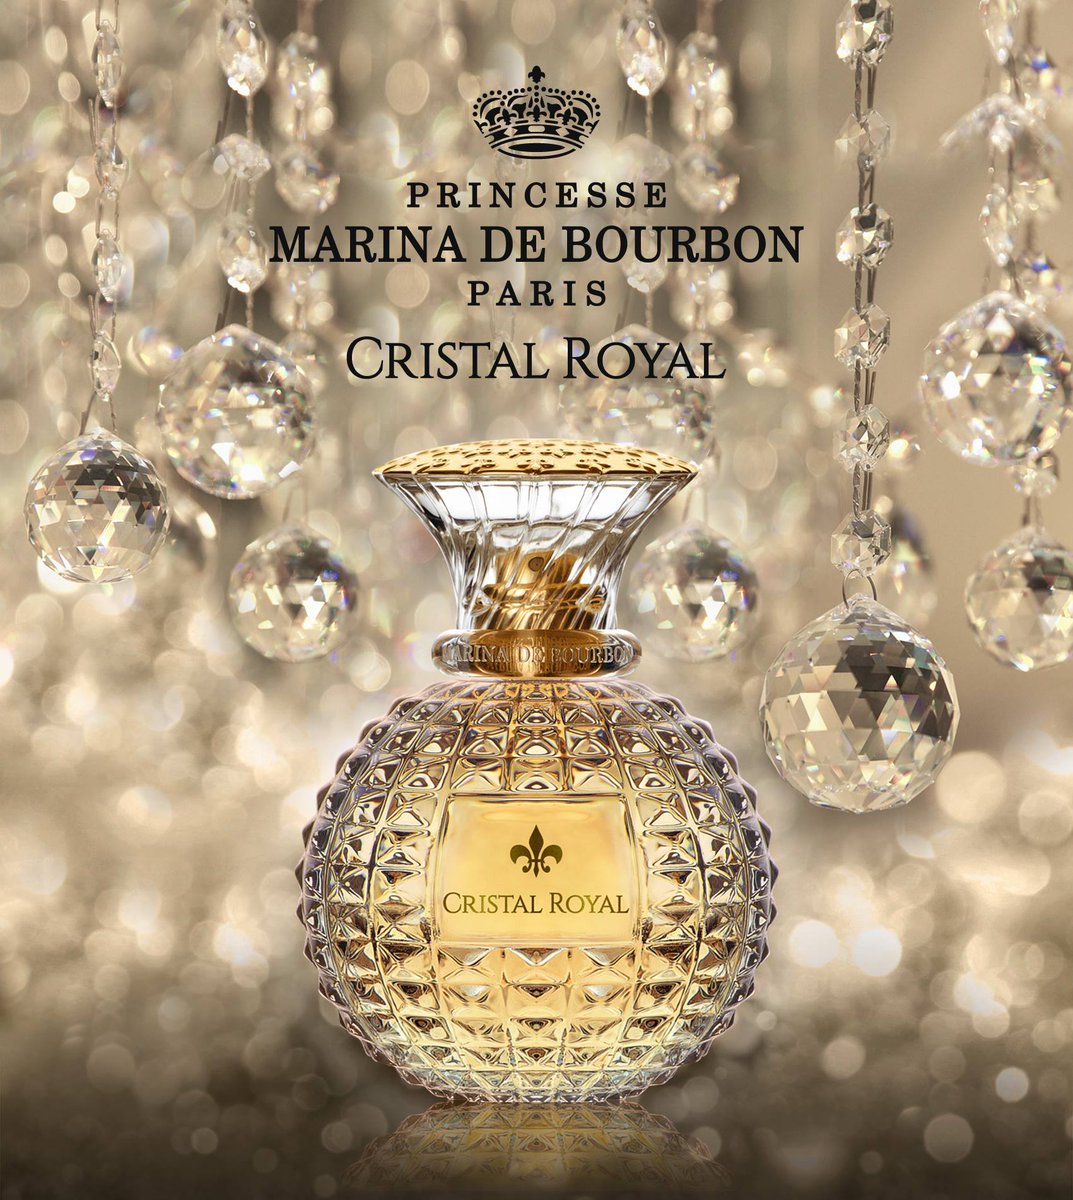 عطر زنانه پرینسس مارینا دو بوربون Cristal Royal حجم 100میلی لیتر